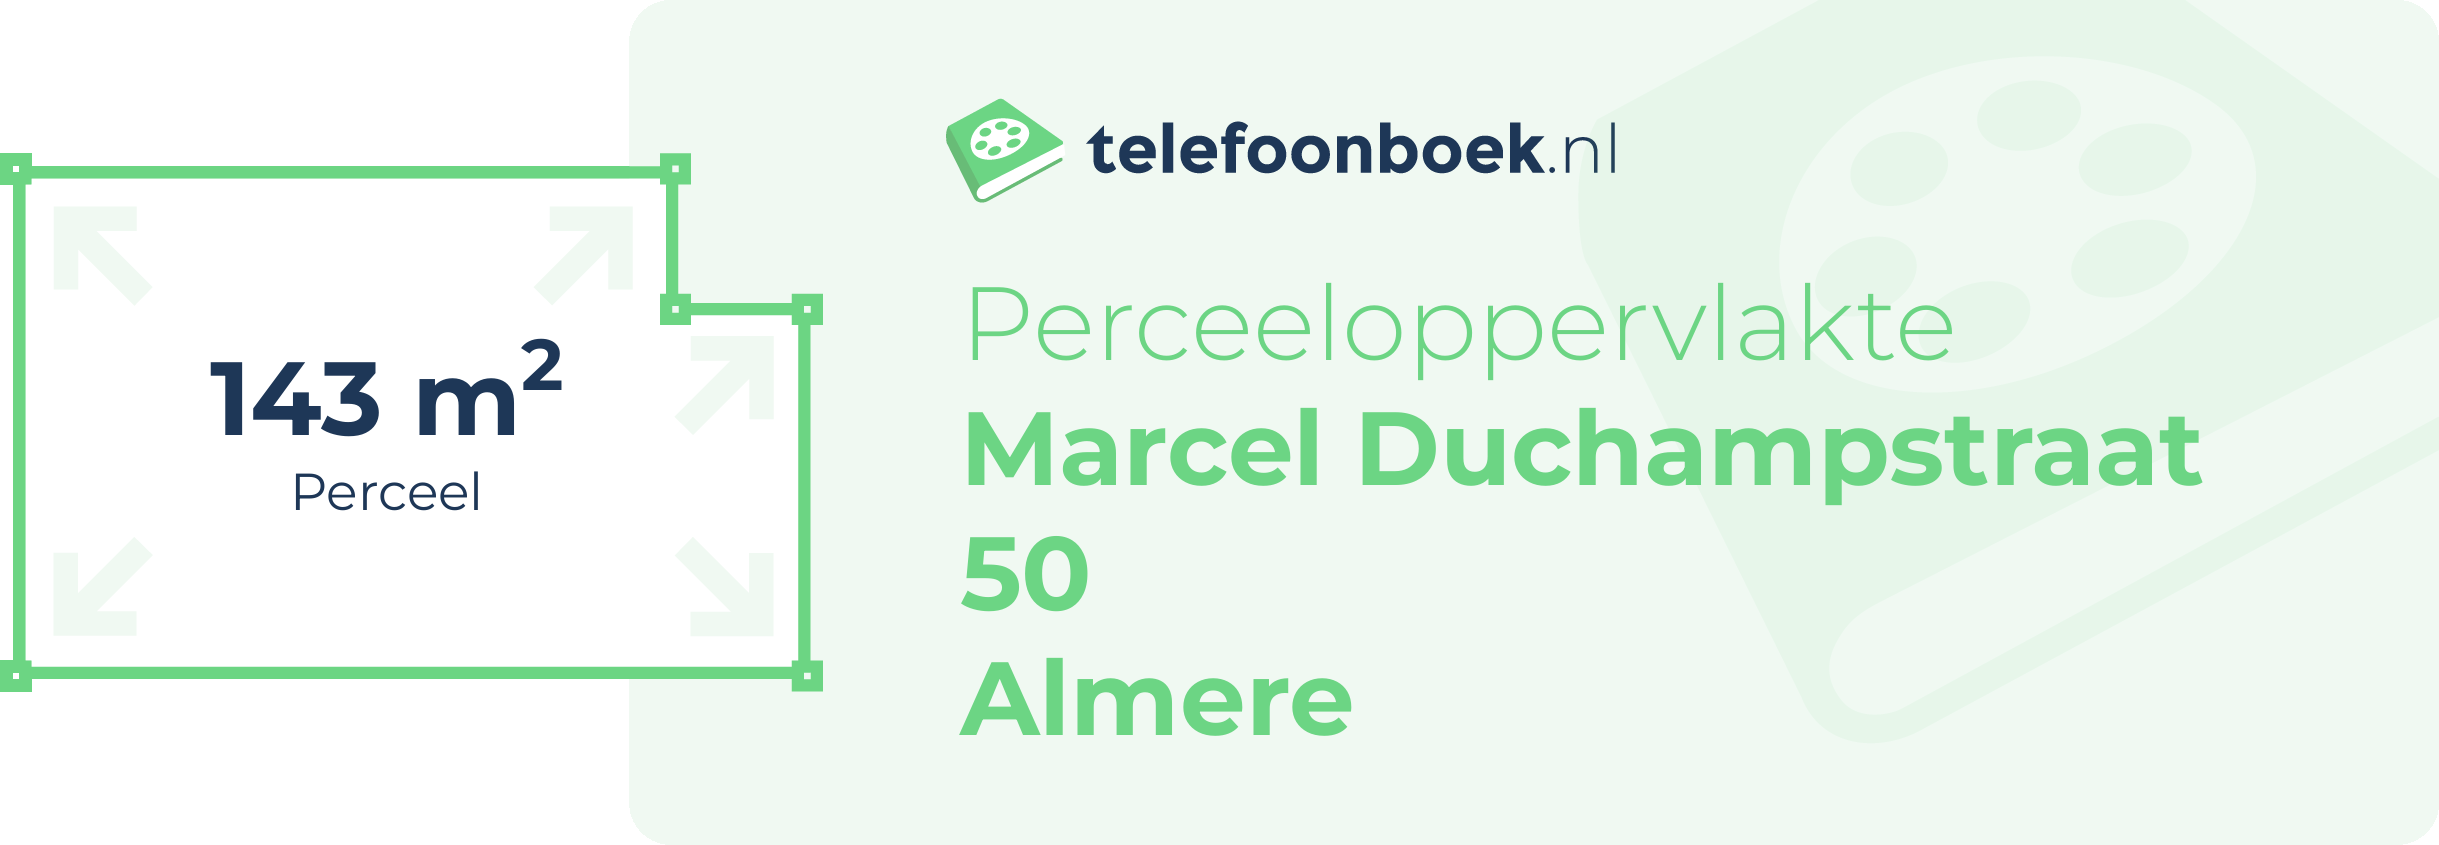 Perceeloppervlakte Marcel Duchampstraat 50 Almere